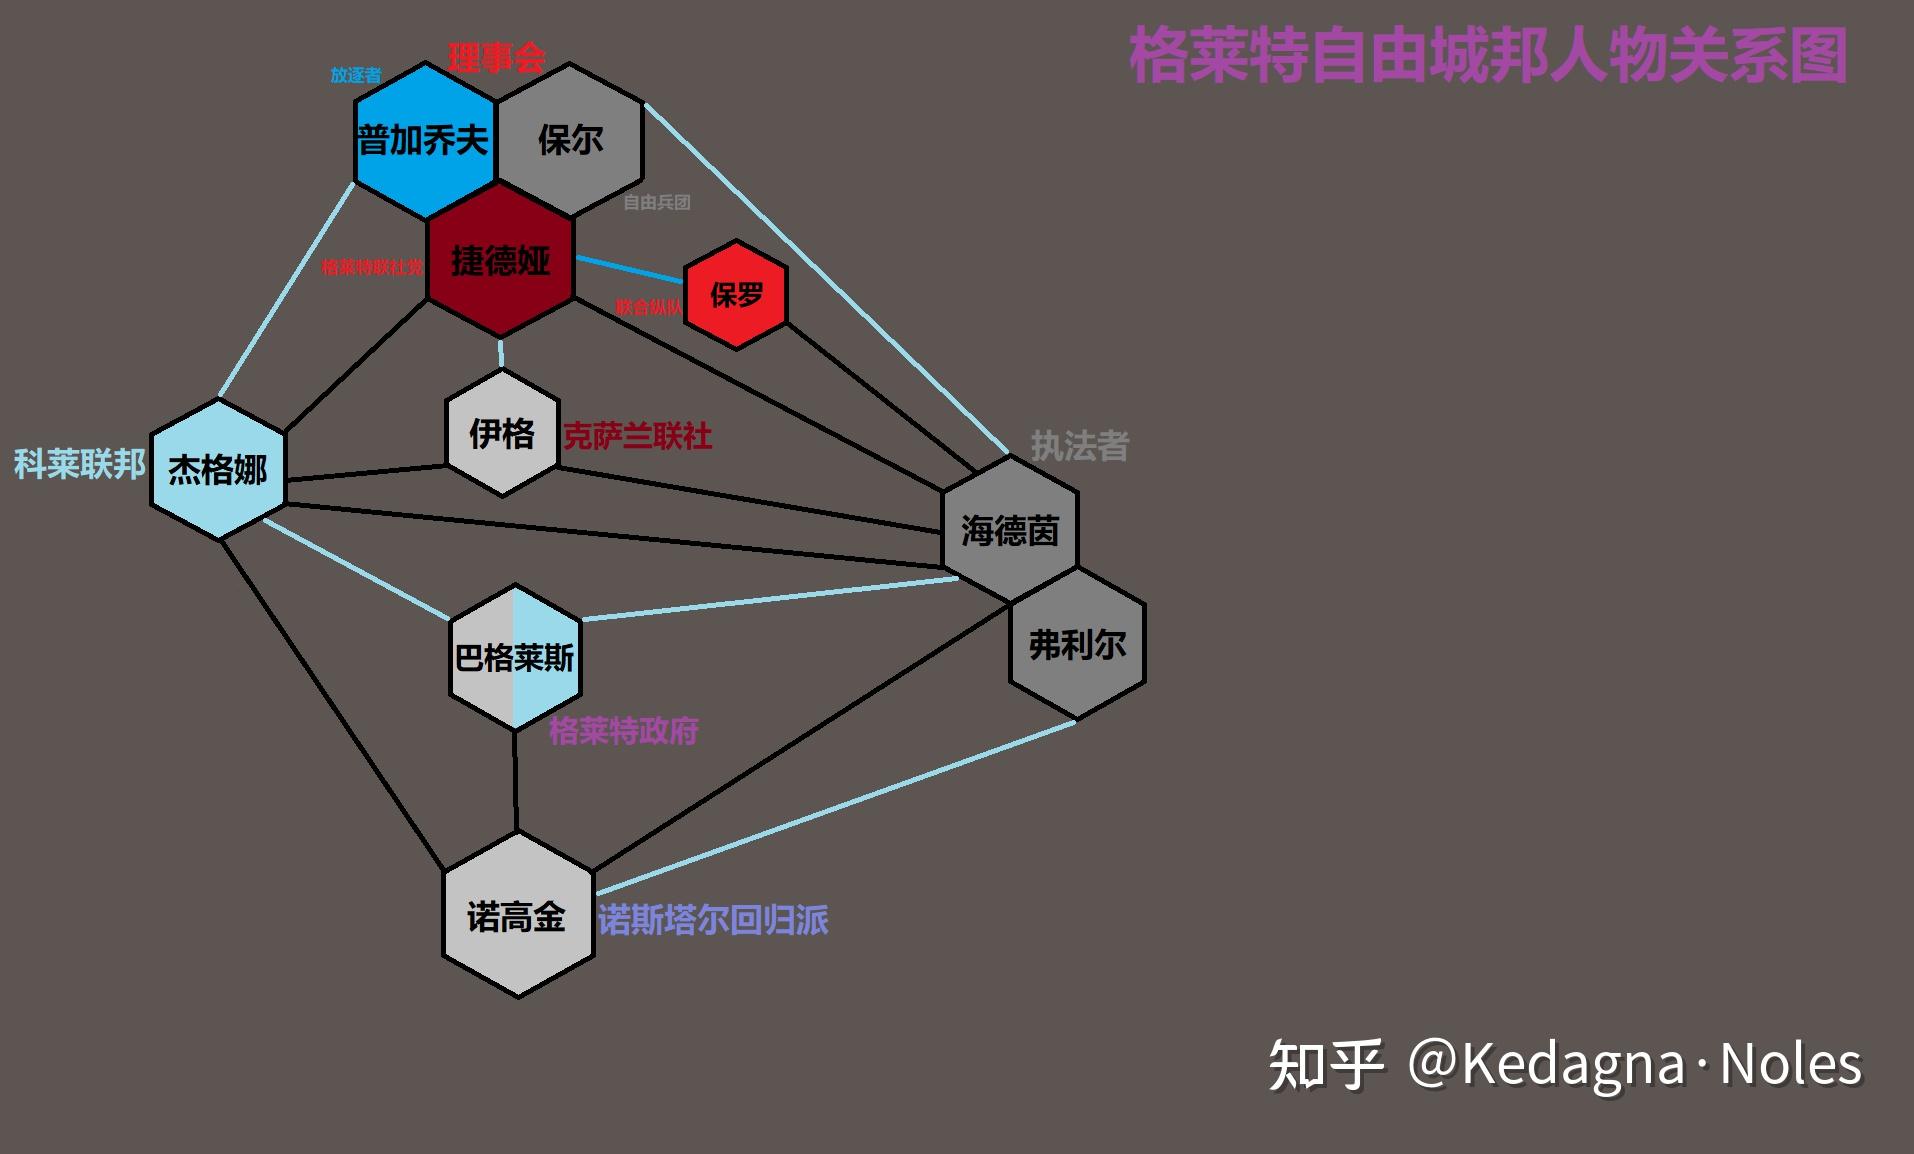 关系图(黑线代表敌对,蓝线代表一定的合作,人物姓名背景色代表政治